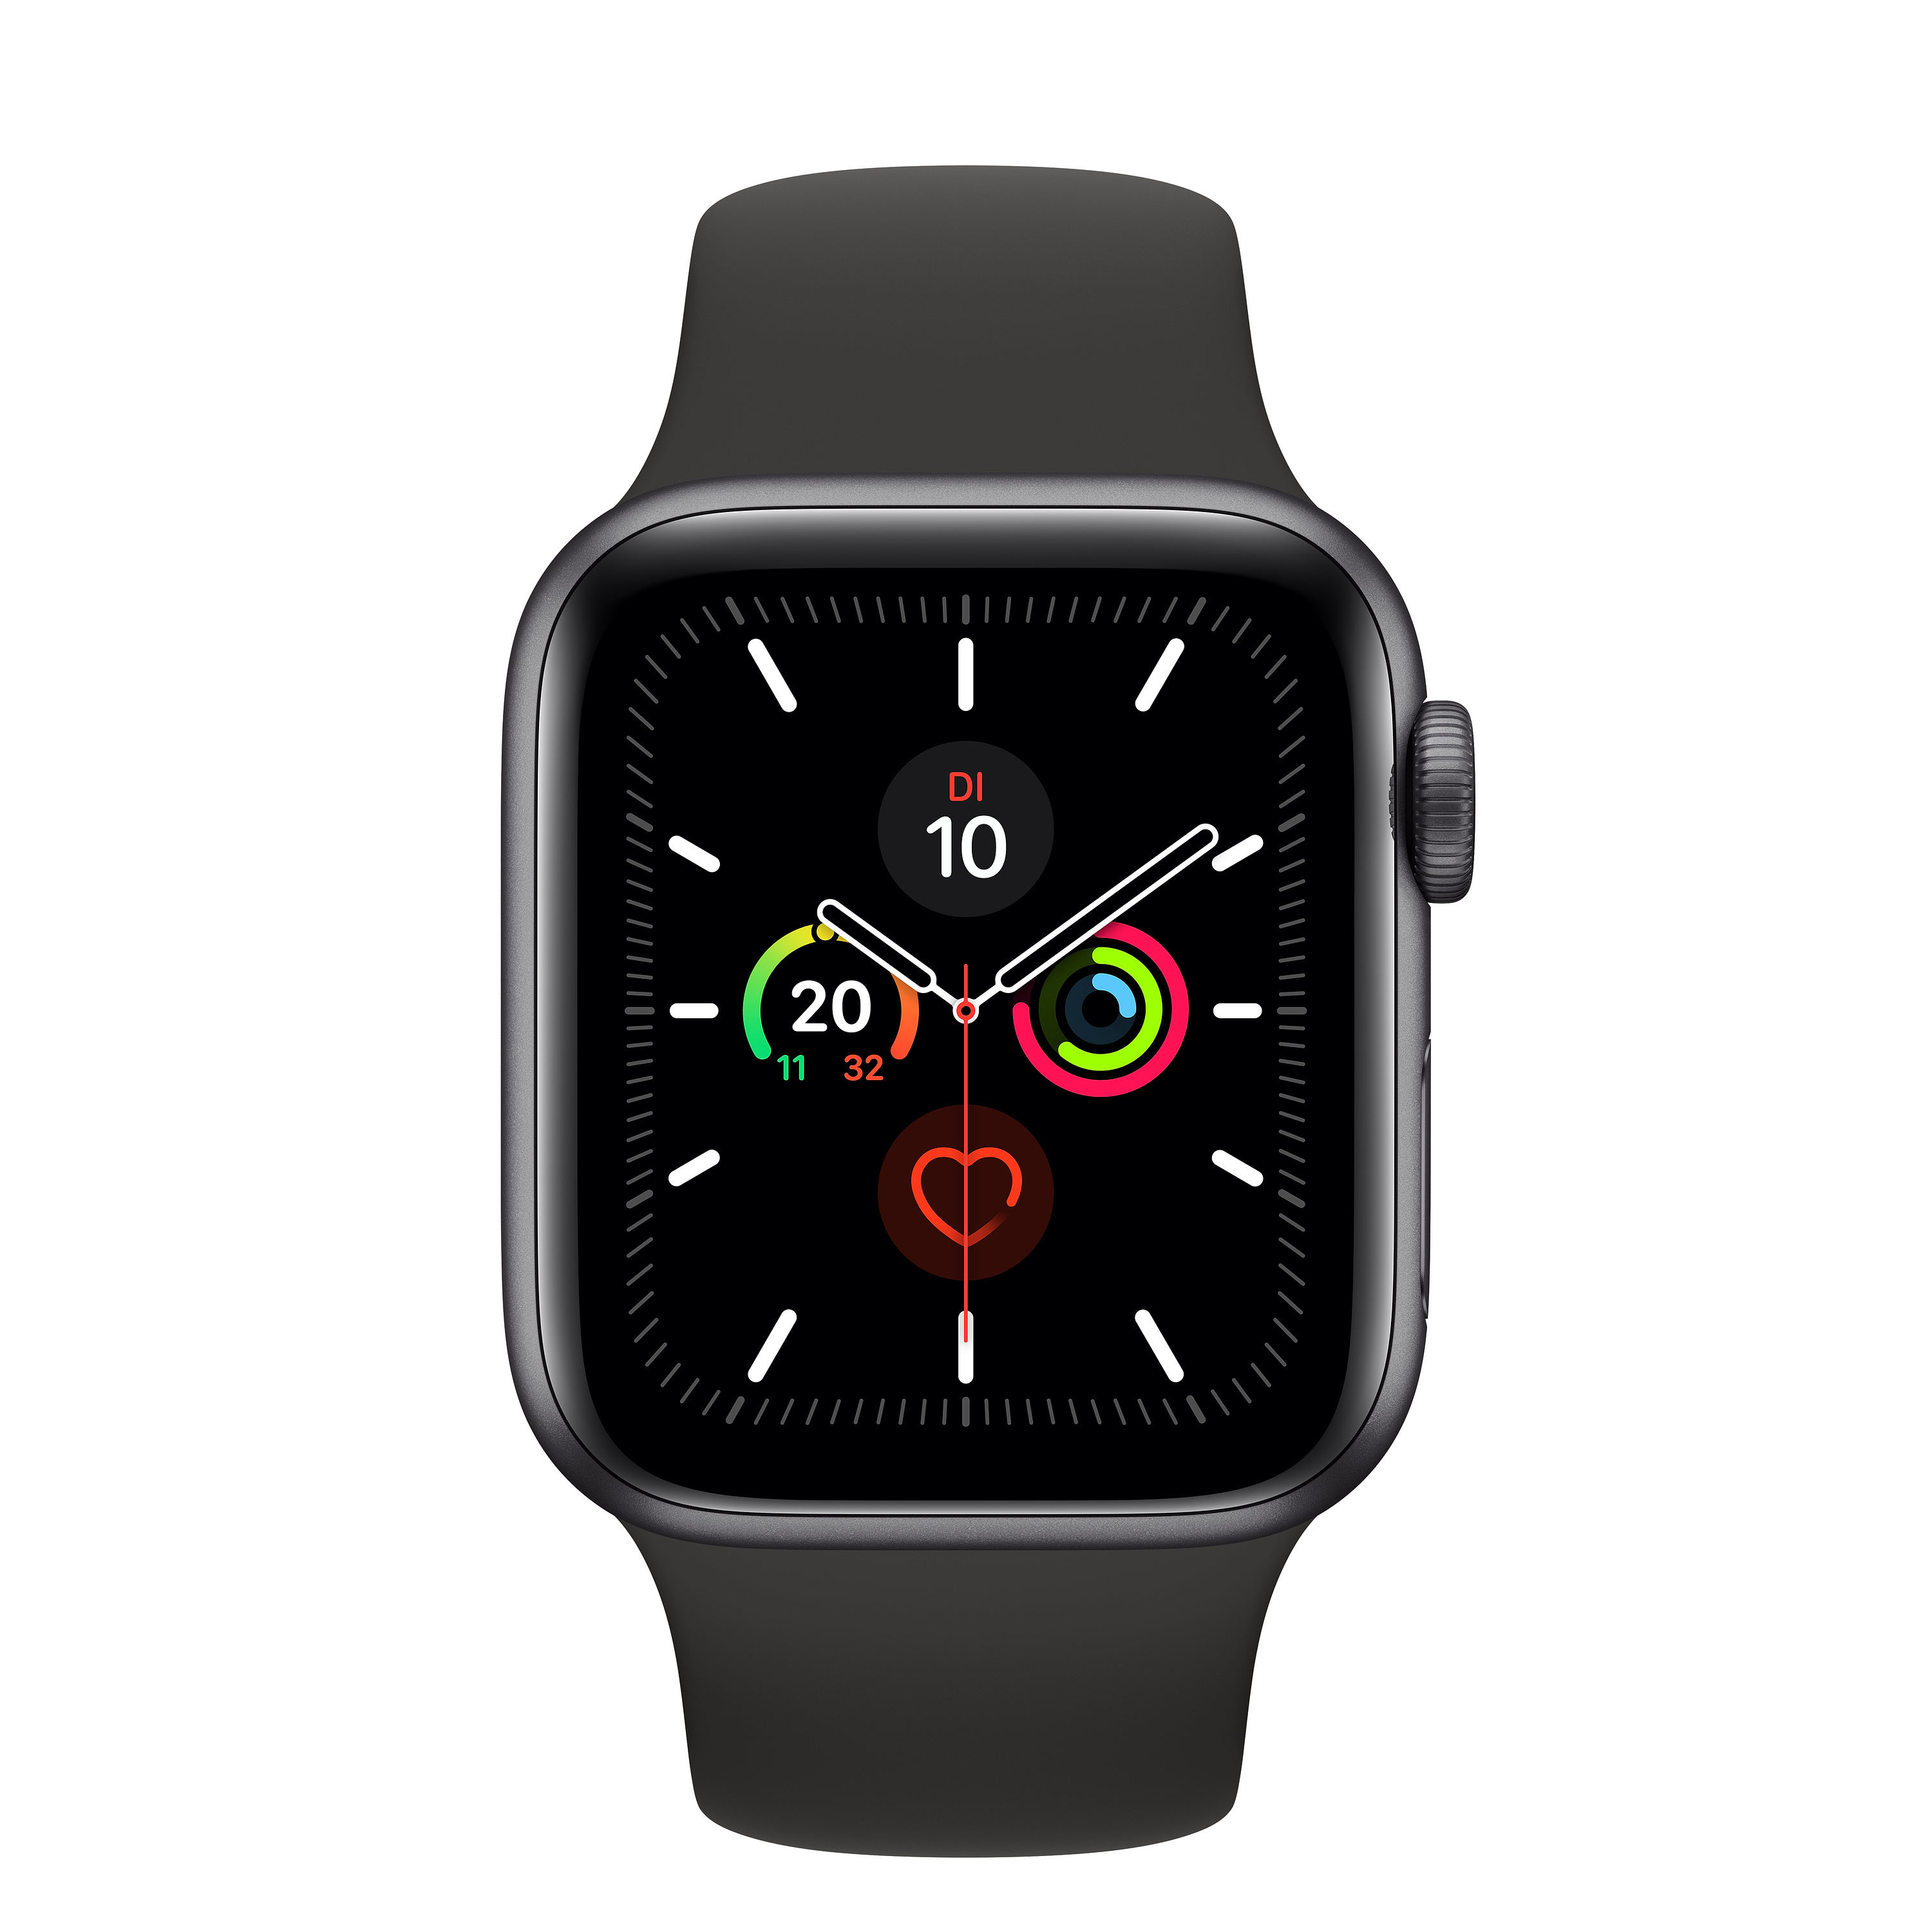 Apple Watch Series 5 Live Wallpaper - carrotapp